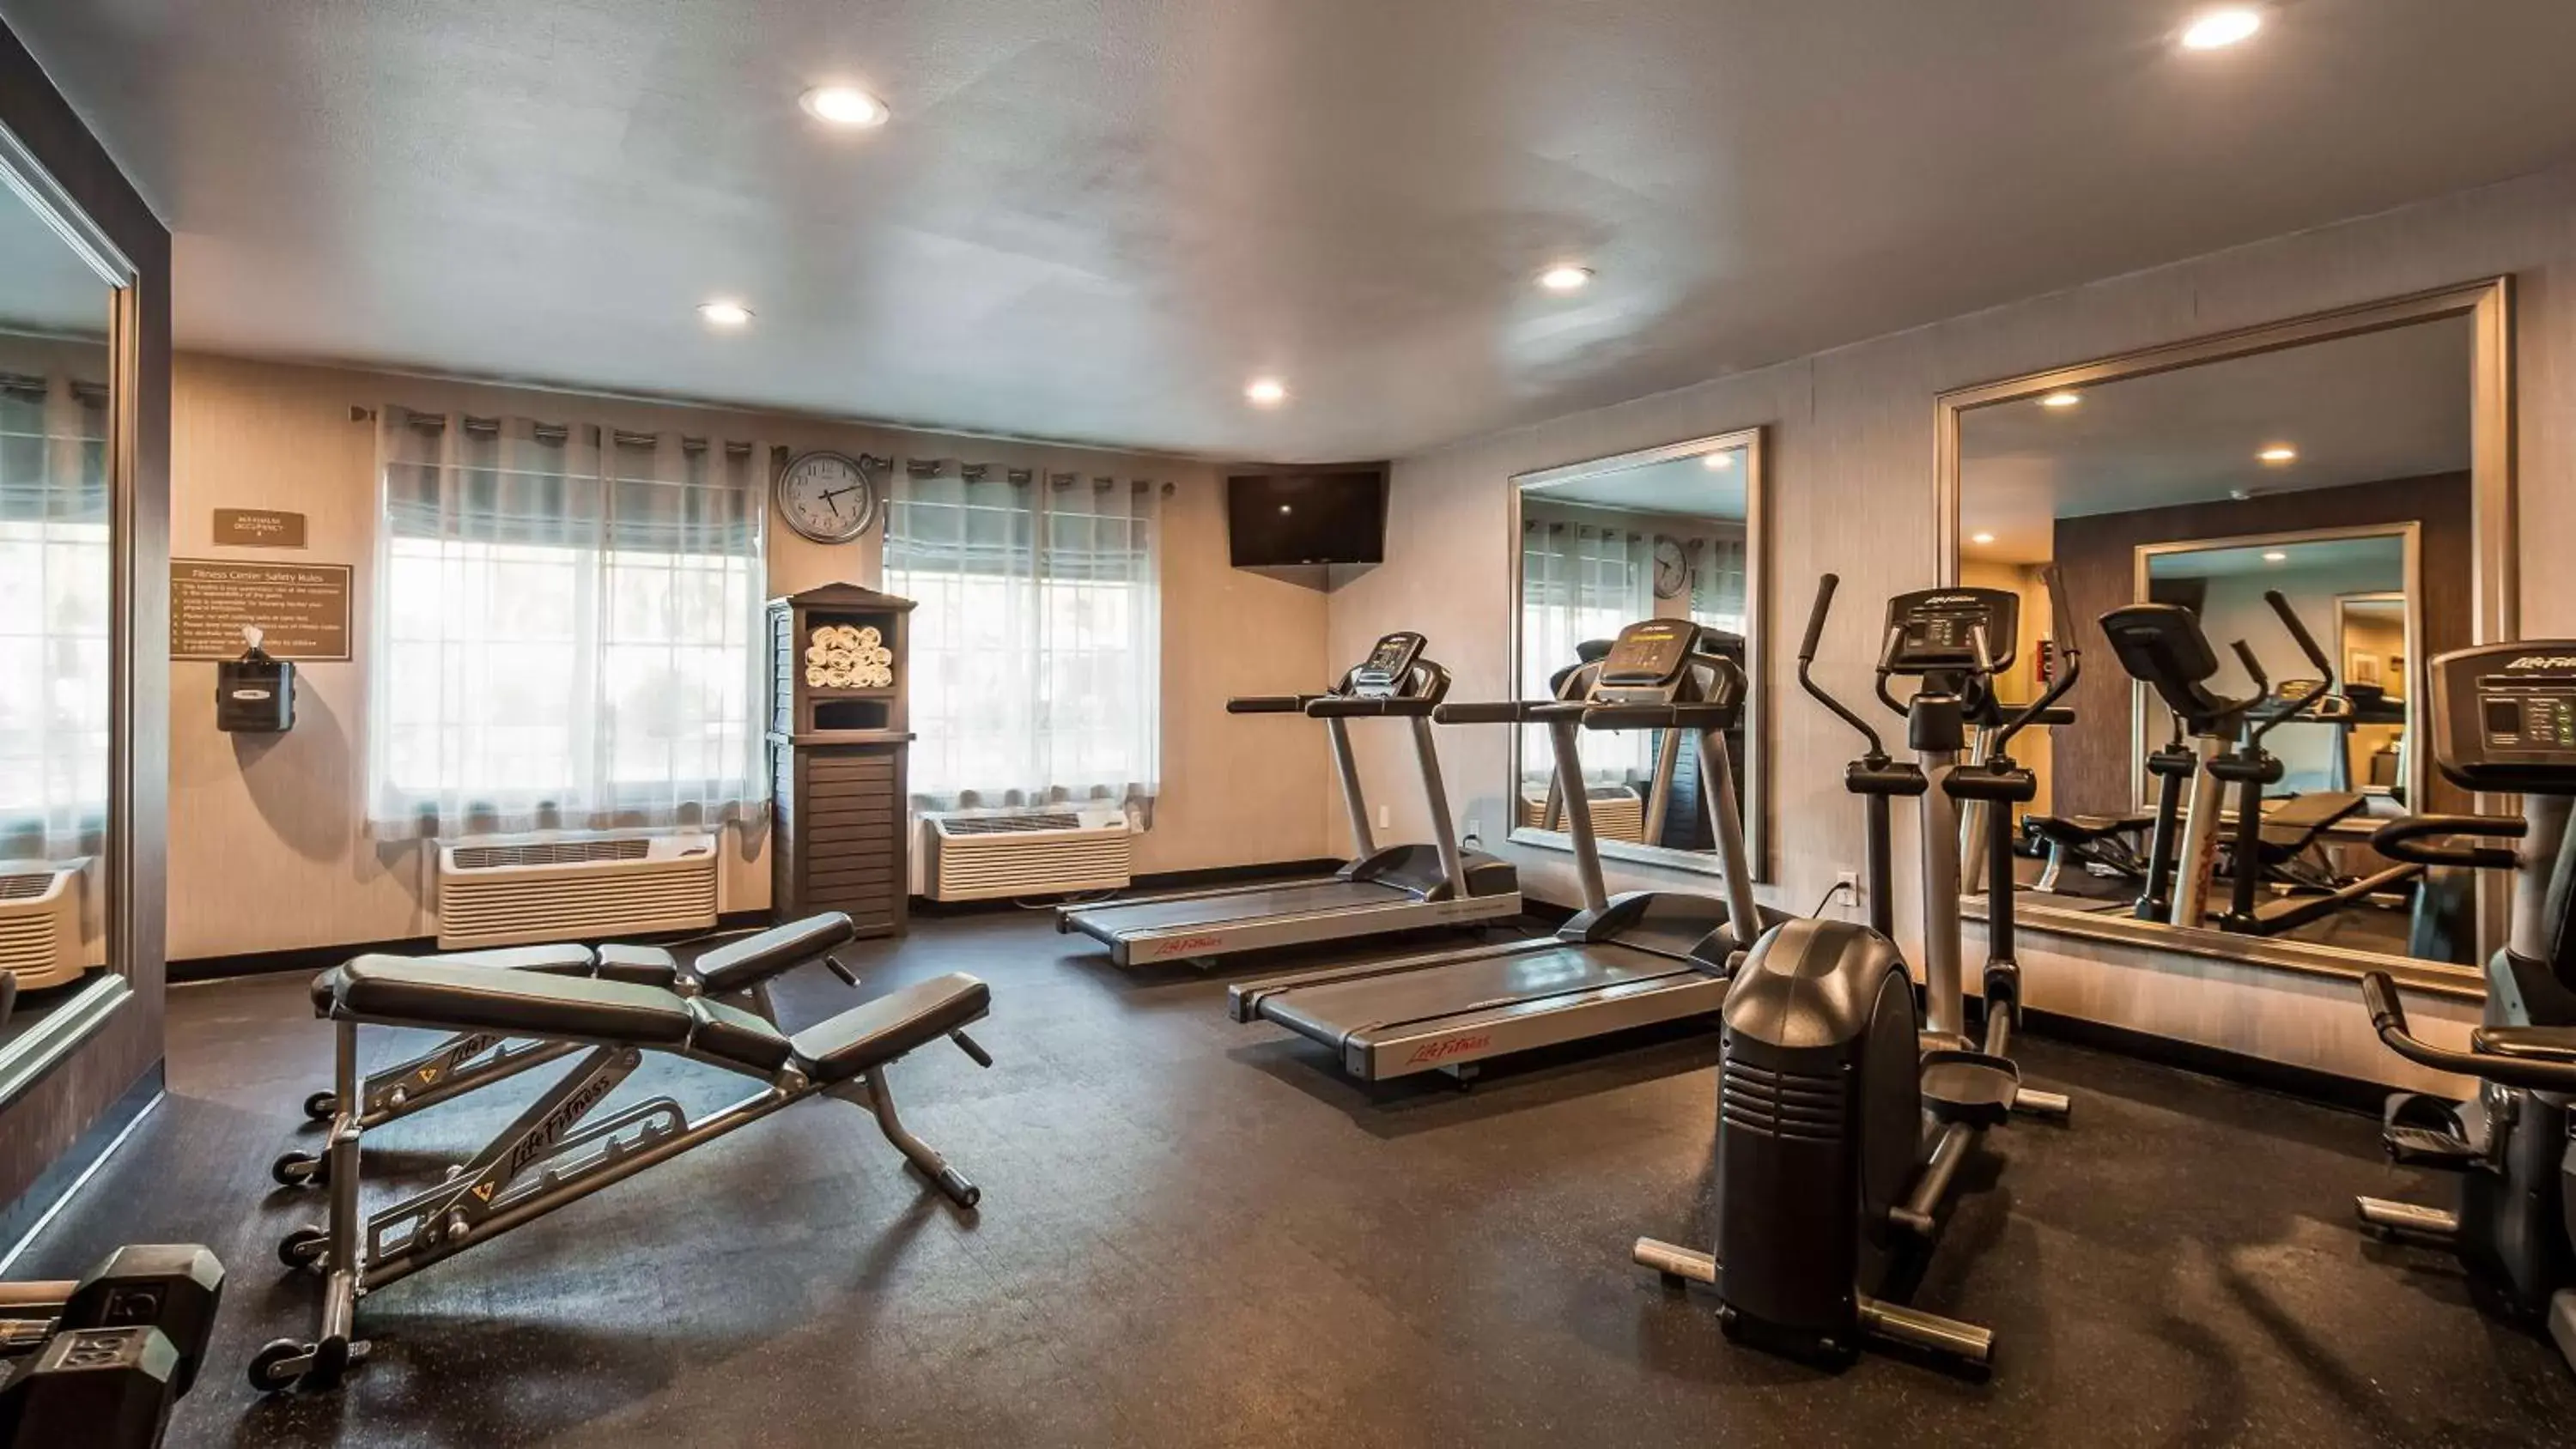 Fitness centre/facilities, Fitness Center/Facilities in Best Western University Inn Santa Clara